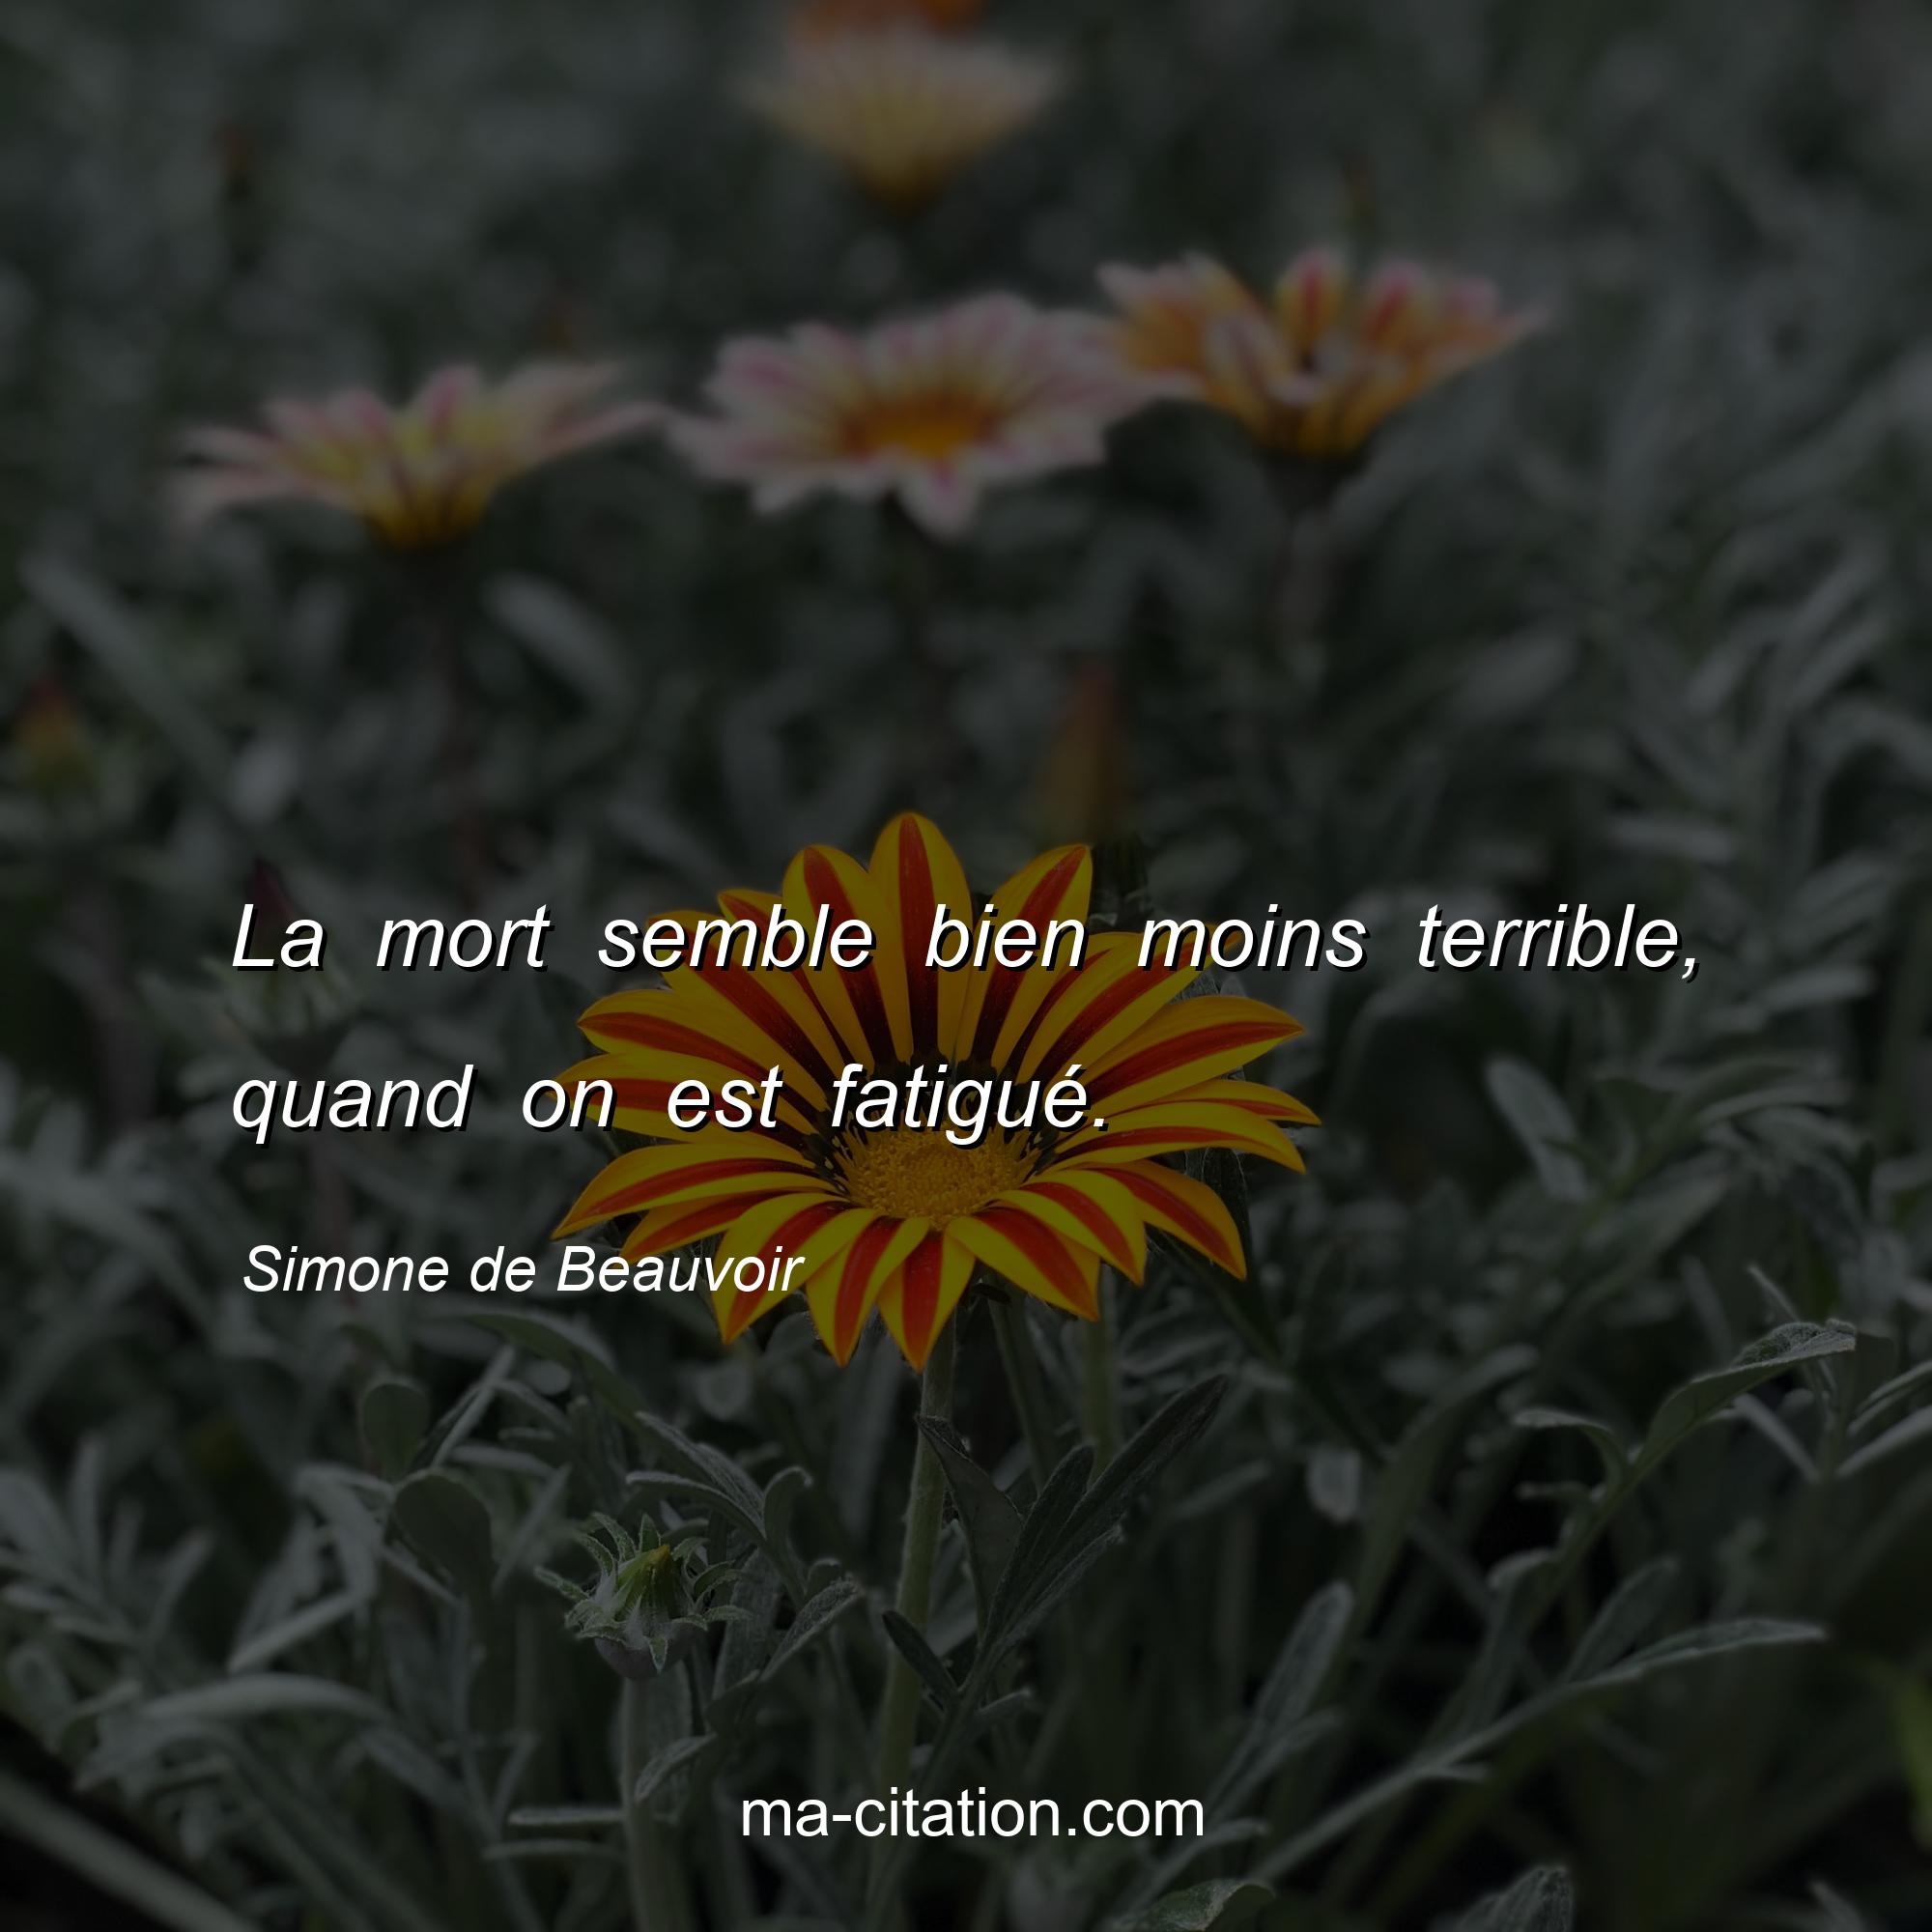 Simone de Beauvoir : La mort semble bien moins terrible, quand on est fatigué.